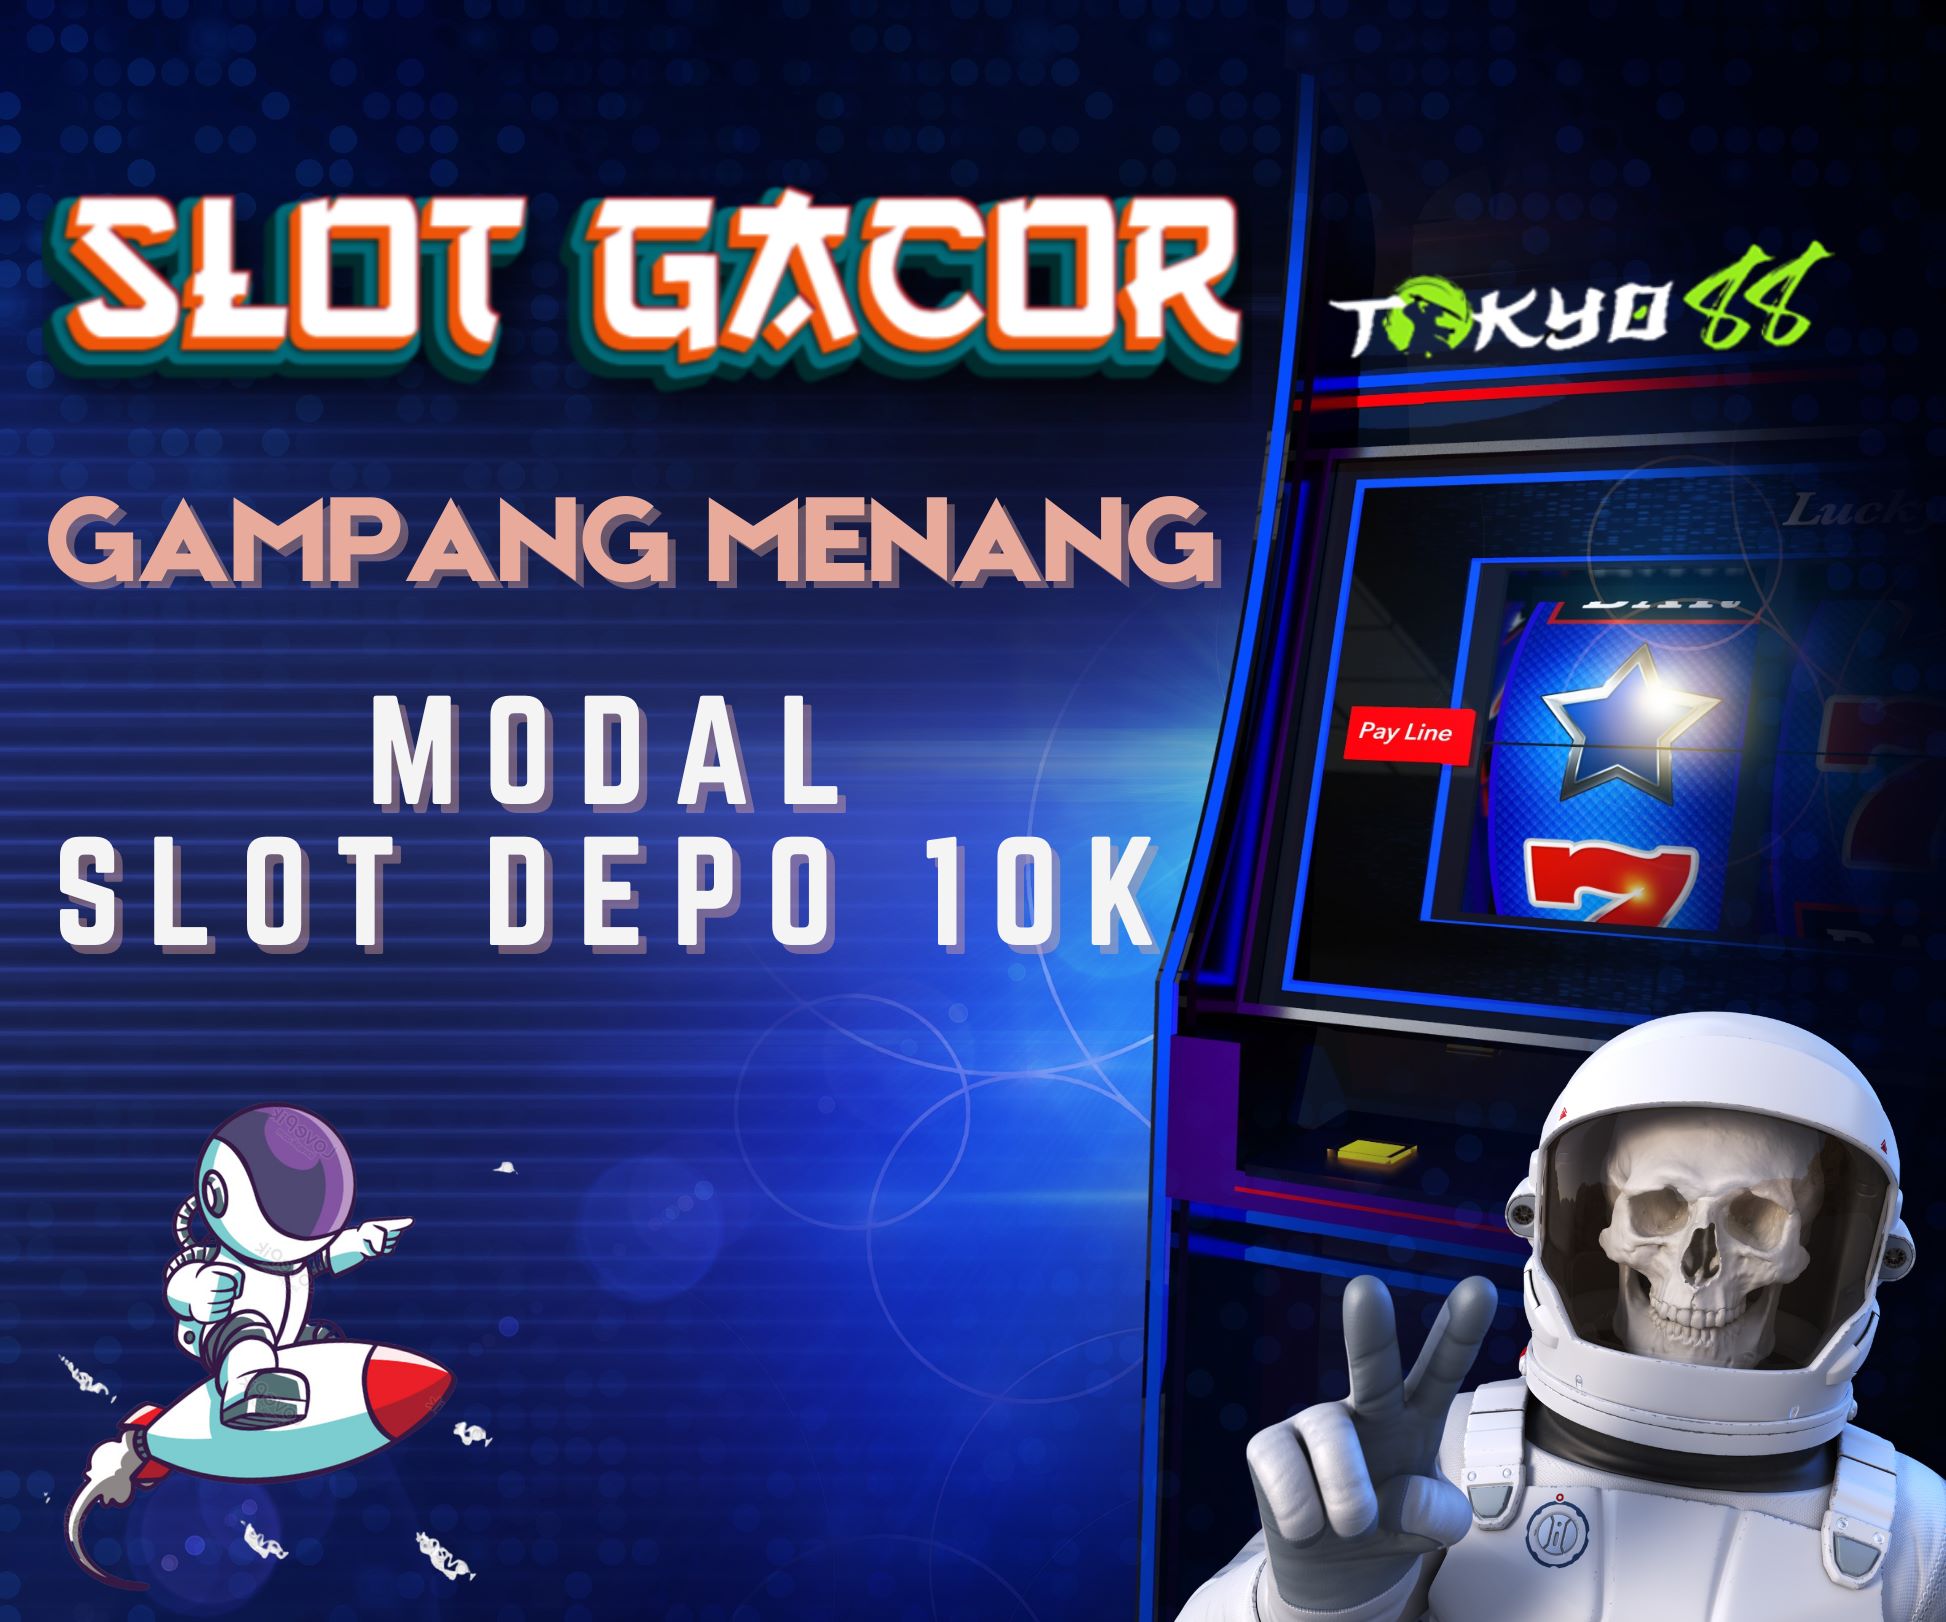 Slot Gacor Gampang Menang, Saba Sport - Win Big with Exciting Slots and Sports